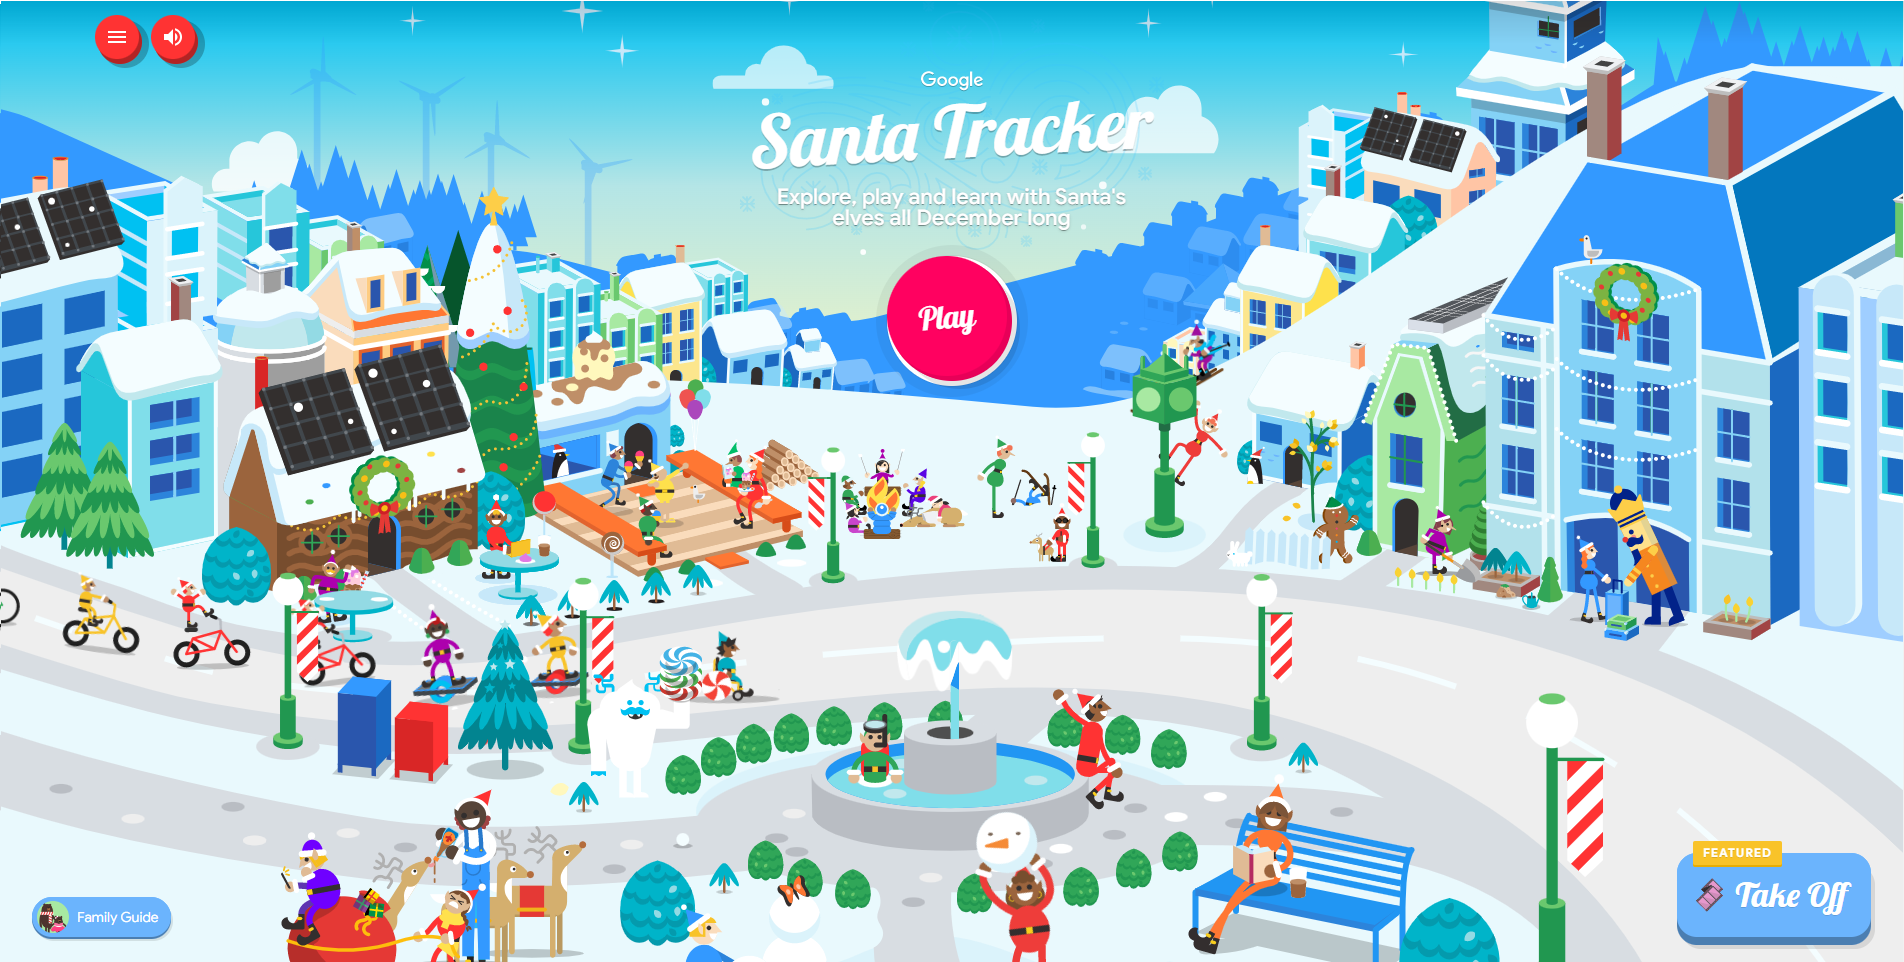 Wo ist der Weihnachtsmann jetzt? Google hat einen Echtzeit-Service zur Verfolgung des Weihnachtsmanns gestartet